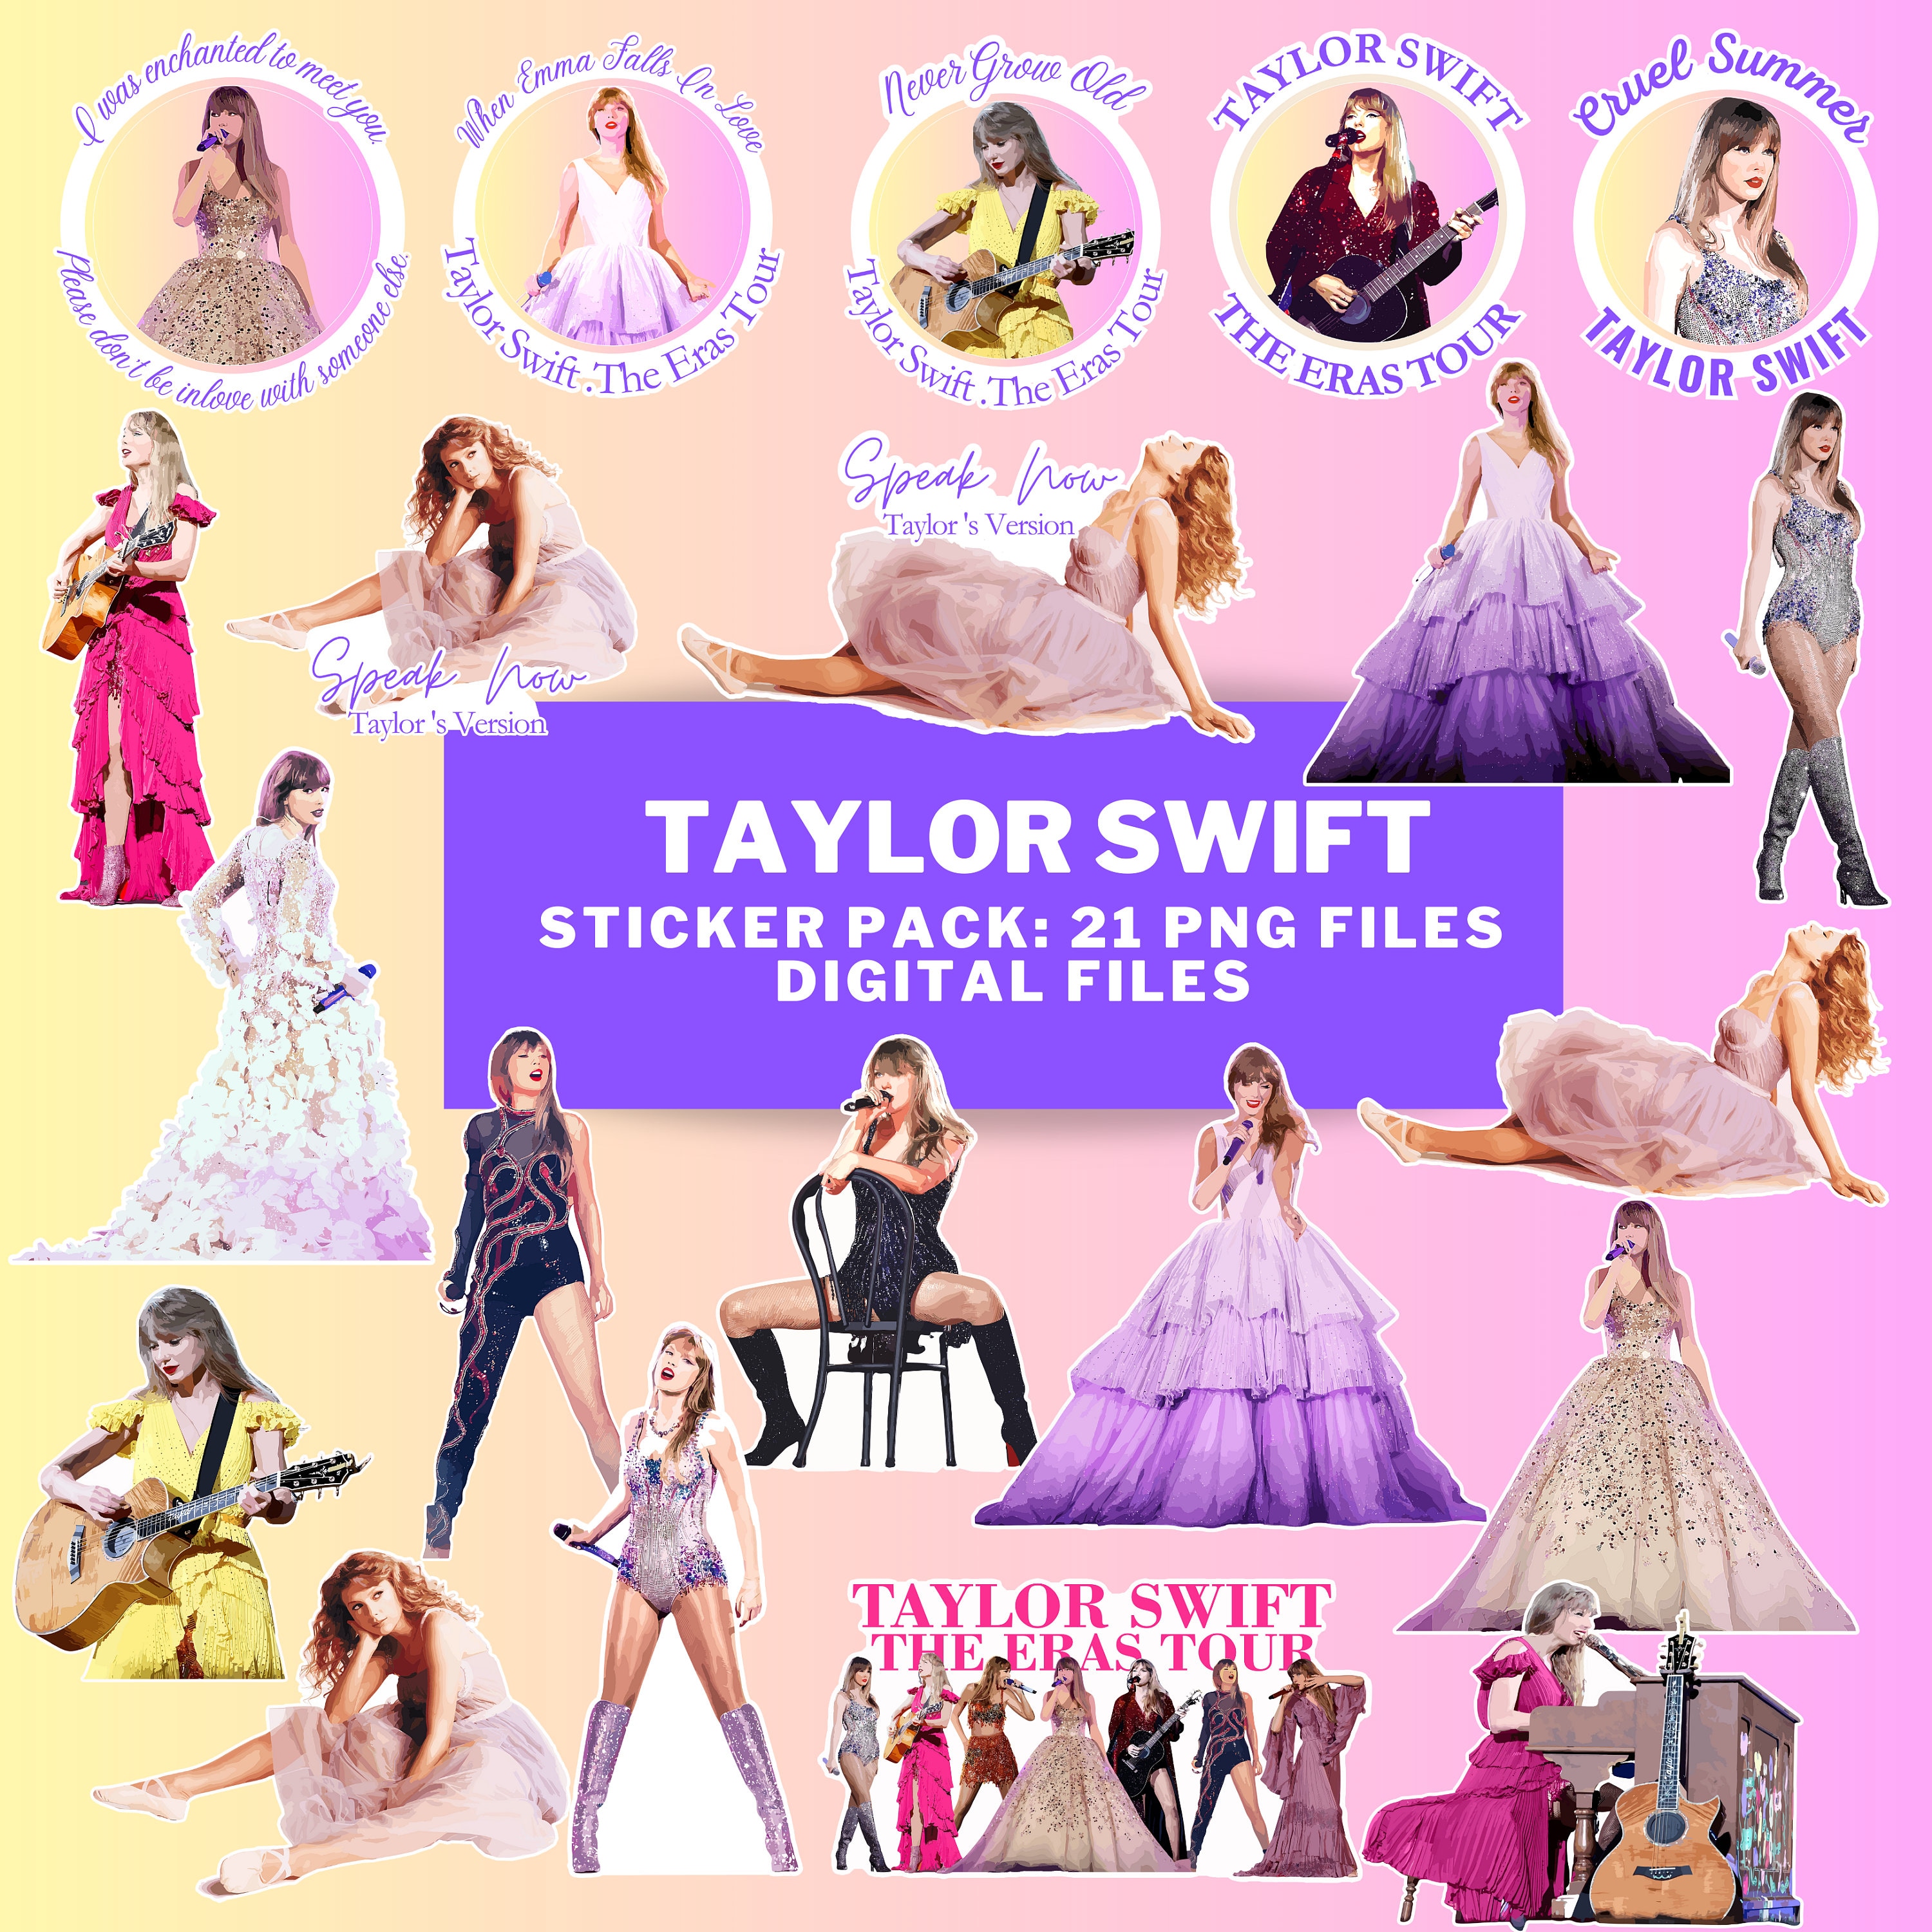 Sammy Gorin LLC - Speak Now (Taylor's Version), Taylor Swift, Sticker